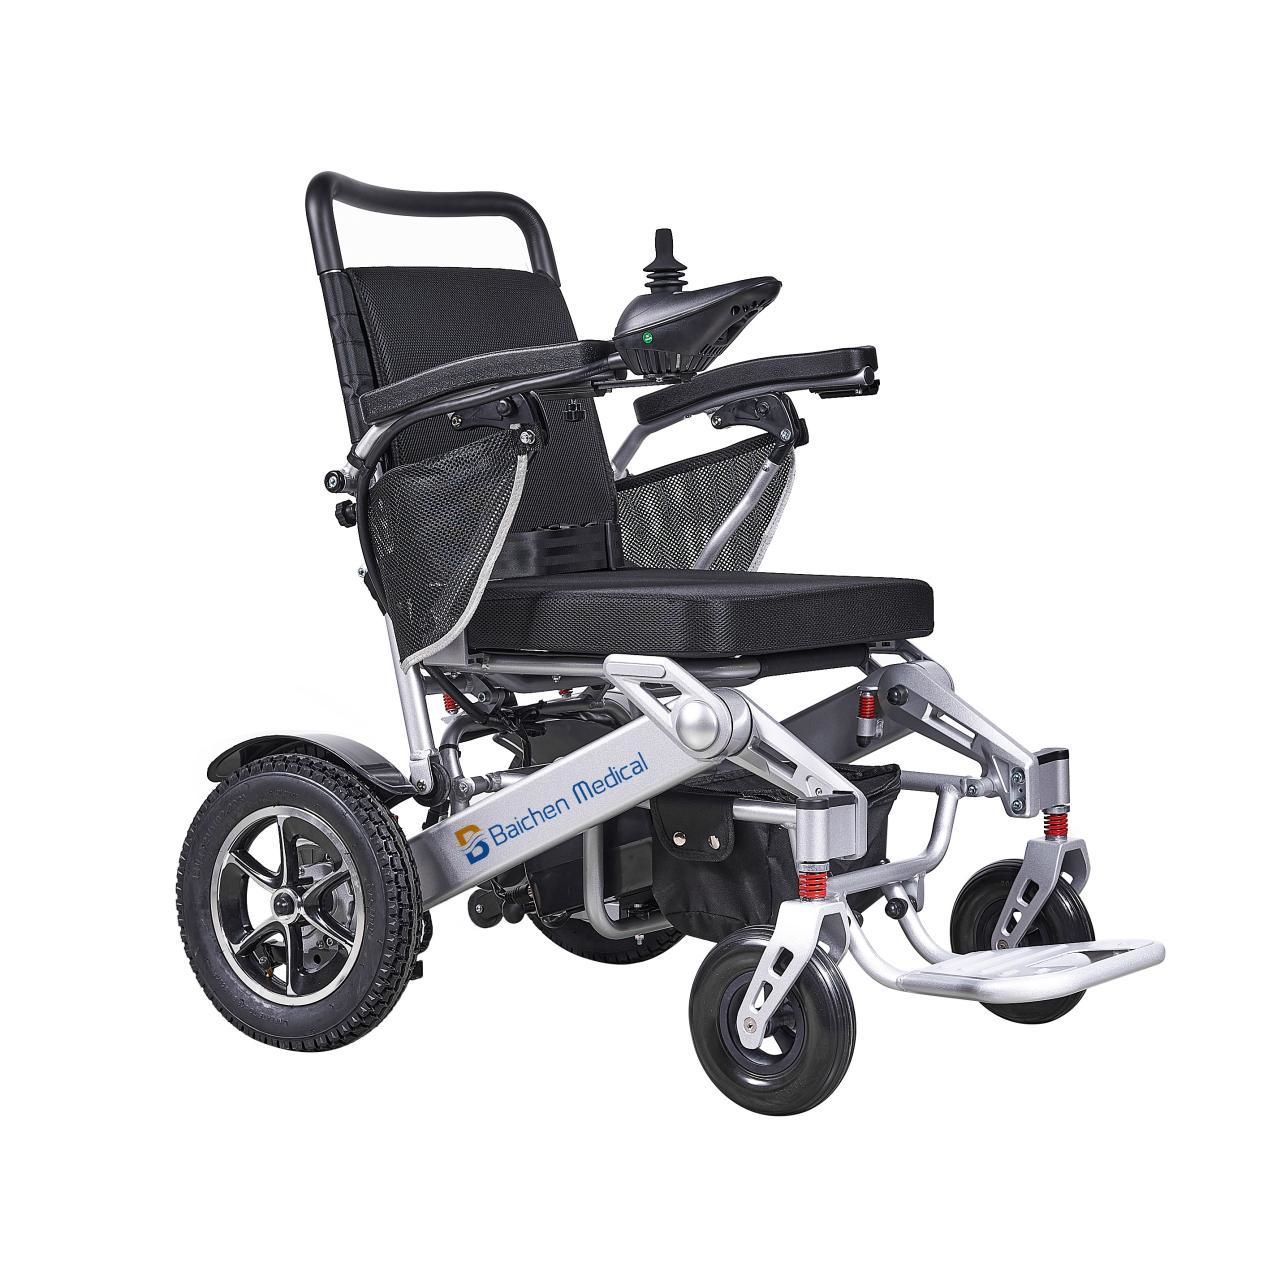 Çin karbon fiber elektrikli tekerlekli sandalye: tekerlekli sandalye nasıl seçilir?